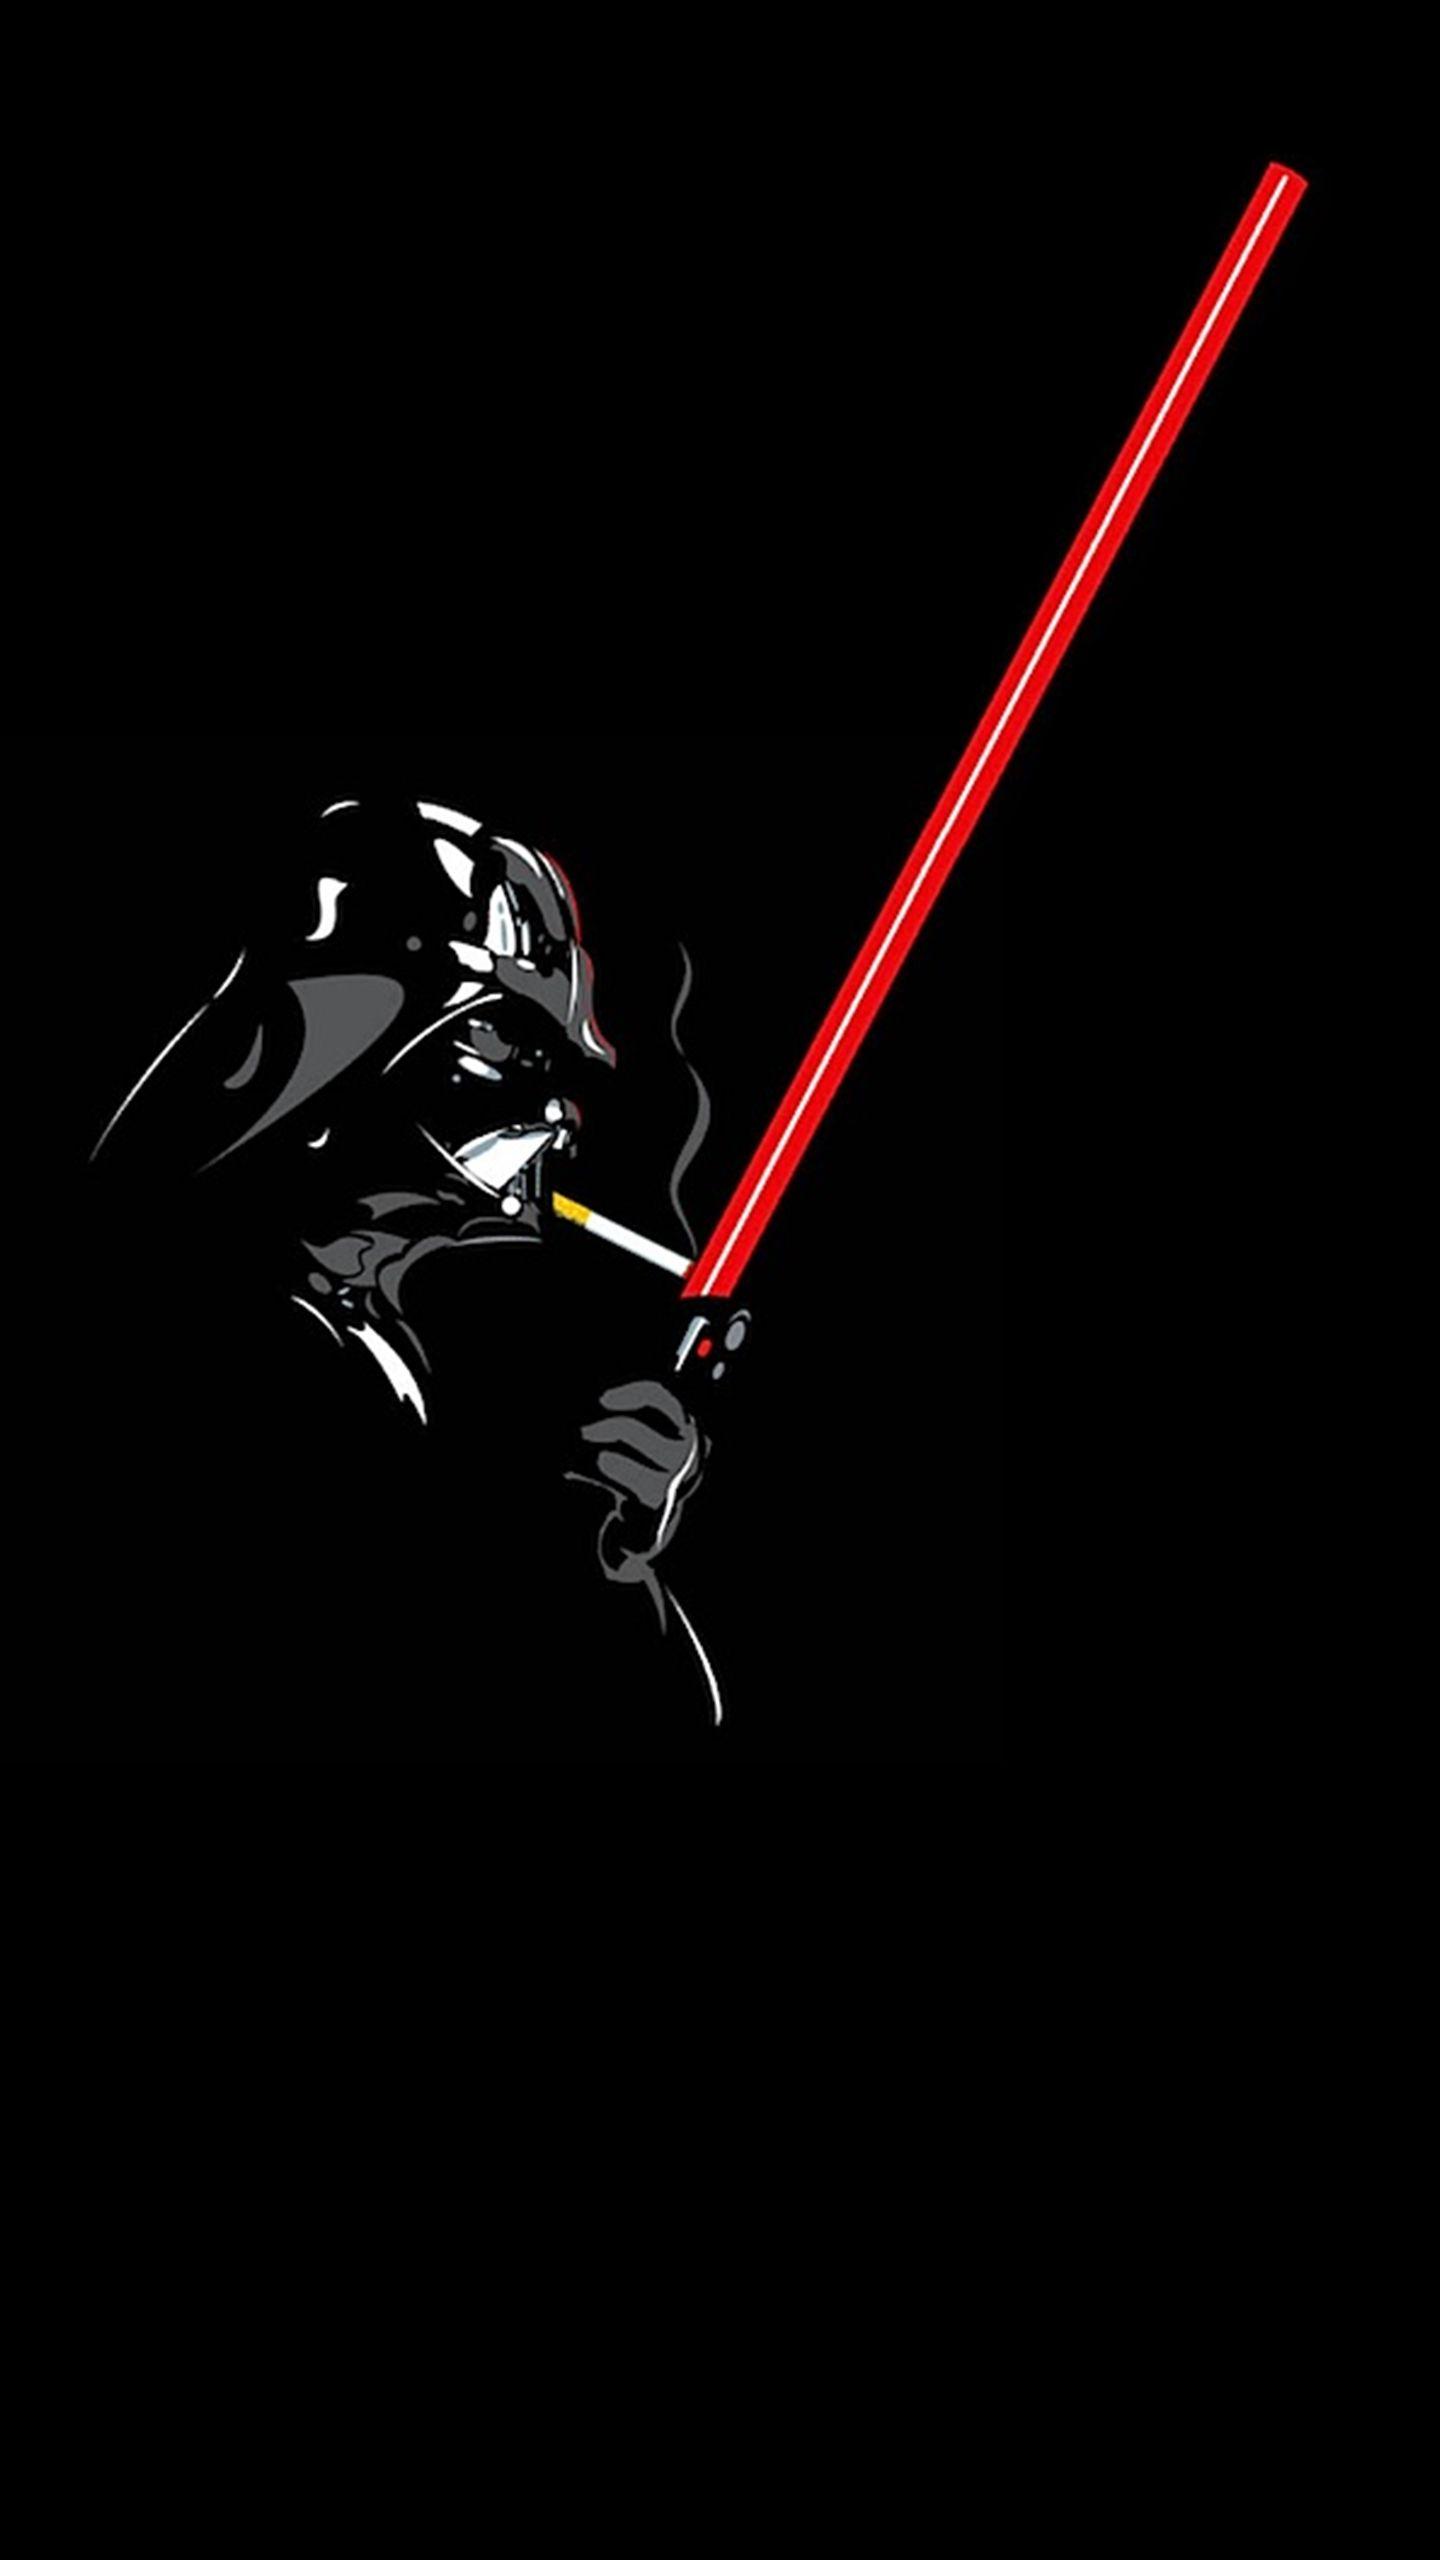 Smoke Vader. Star wars wallpaper, Darth vader, Star wars art